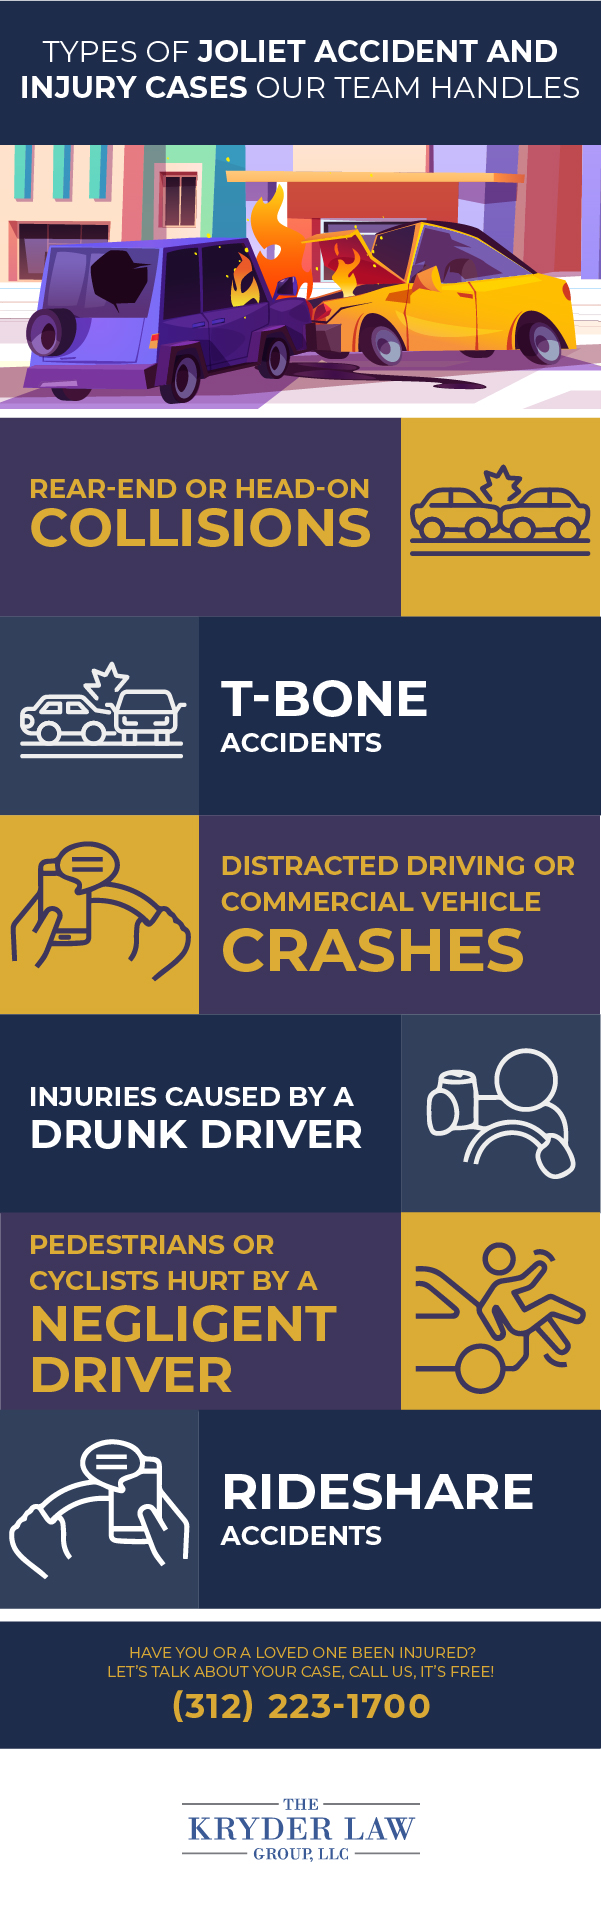 Tipos de casos de accidentes y lesiones en Joliet que maneja nuestro equipo